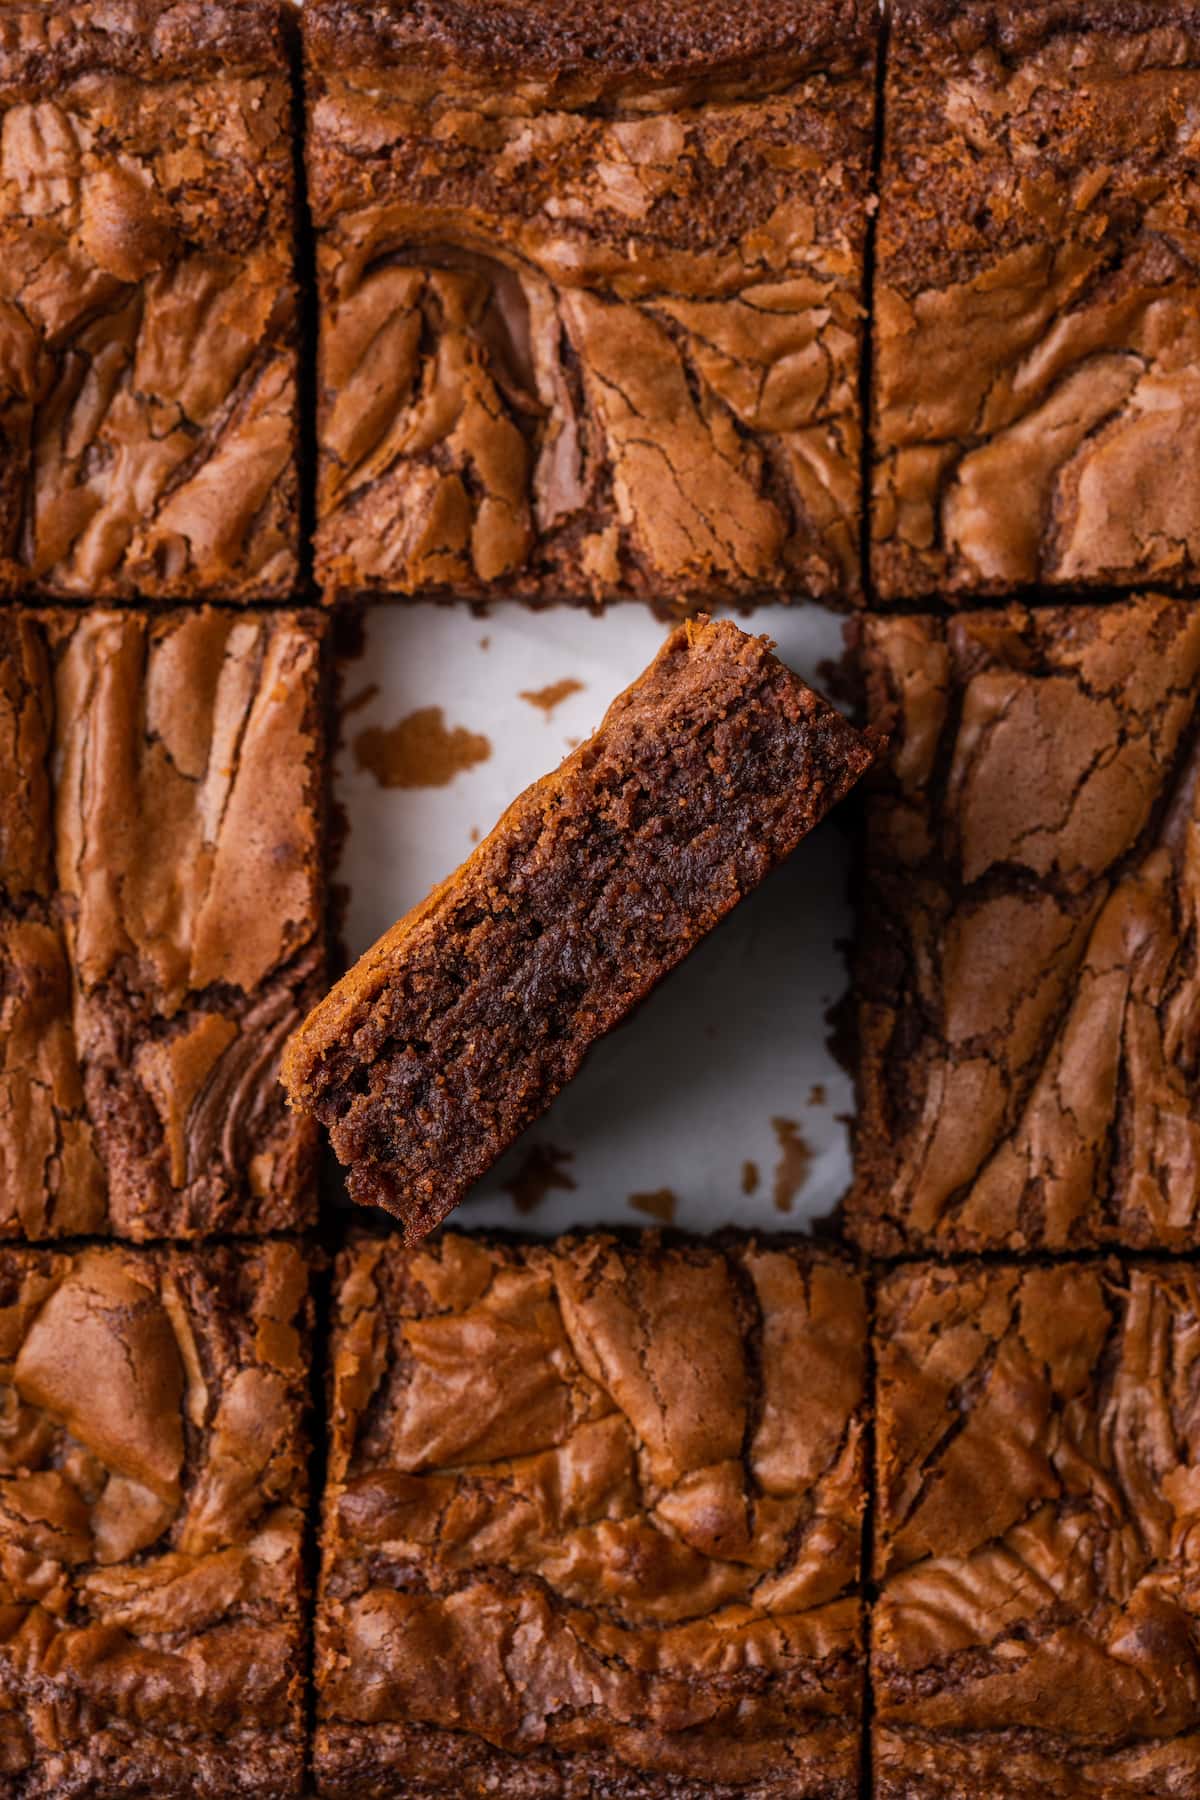 Vista desde arriba de brownies de Nutella cortados en cuadrados, con un brownie boca abajo.